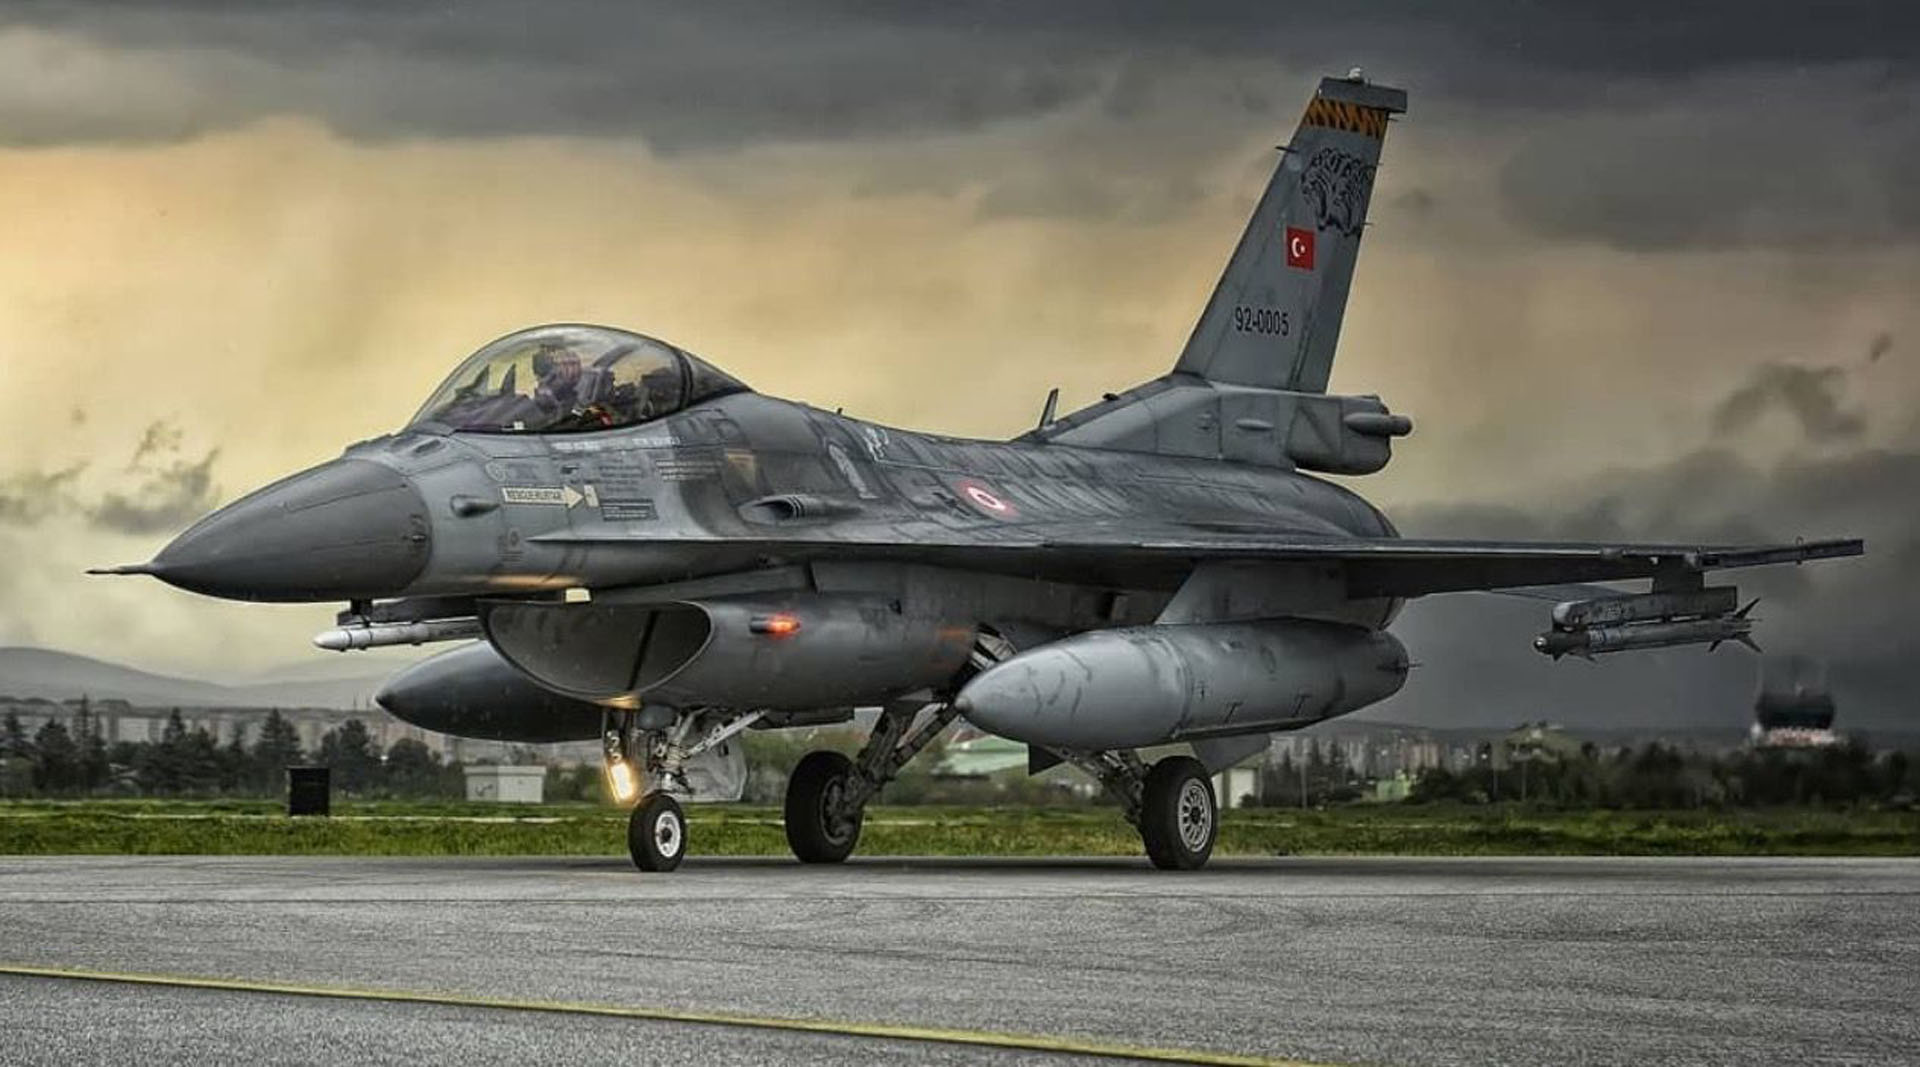 Yunanistan Türk Hava Kuvvetleri engeline takıldı! Türk hava sahasını ihlal eden Yunanistan’a gereken cevap verildi